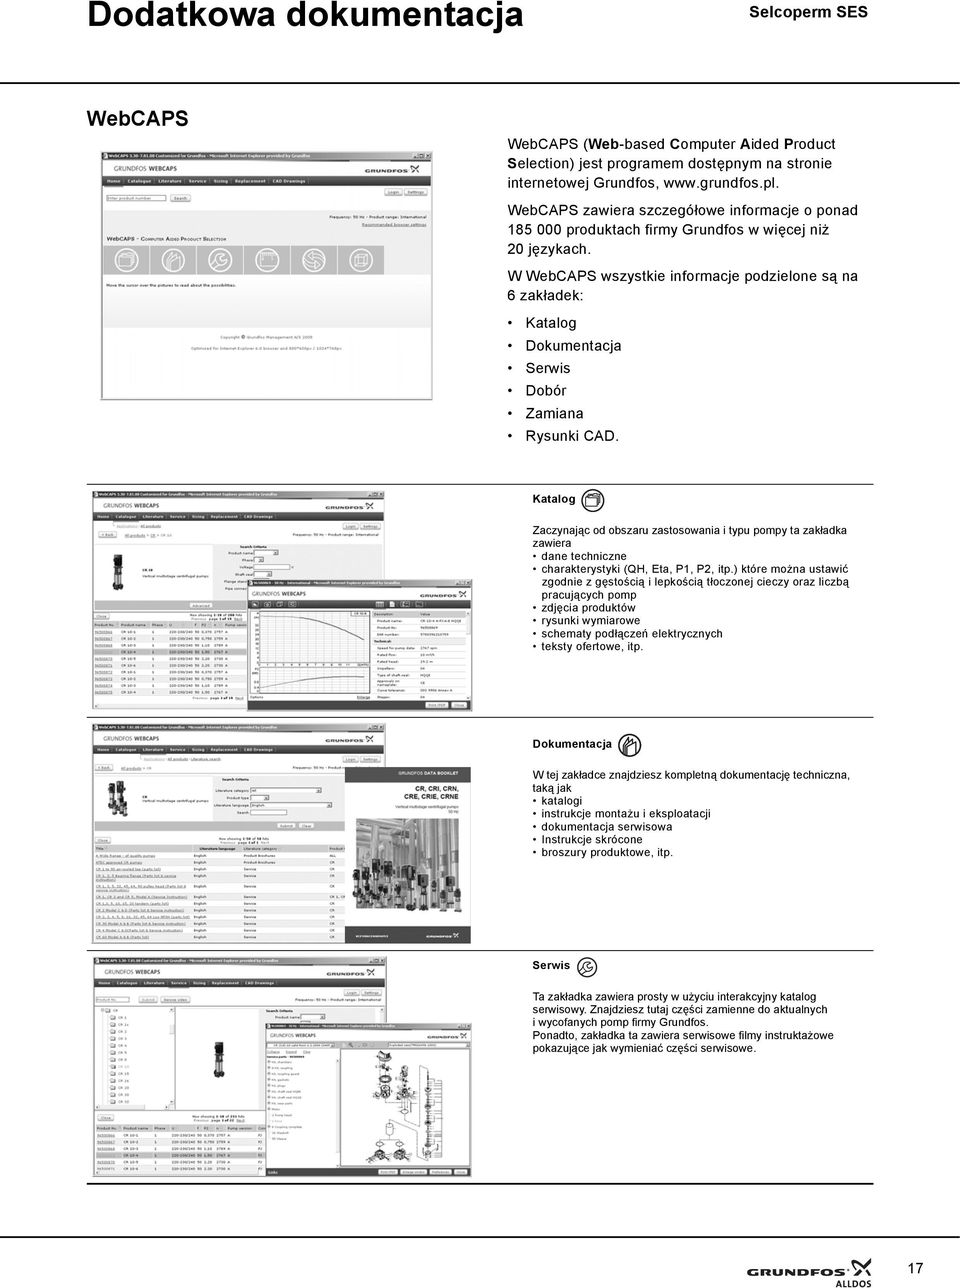 W WebCAPS wszystkie informacje podzielone są na 6zakładek: Katalog Dokumentacja Serwis Dobór Zamiana Rysunki CAD.